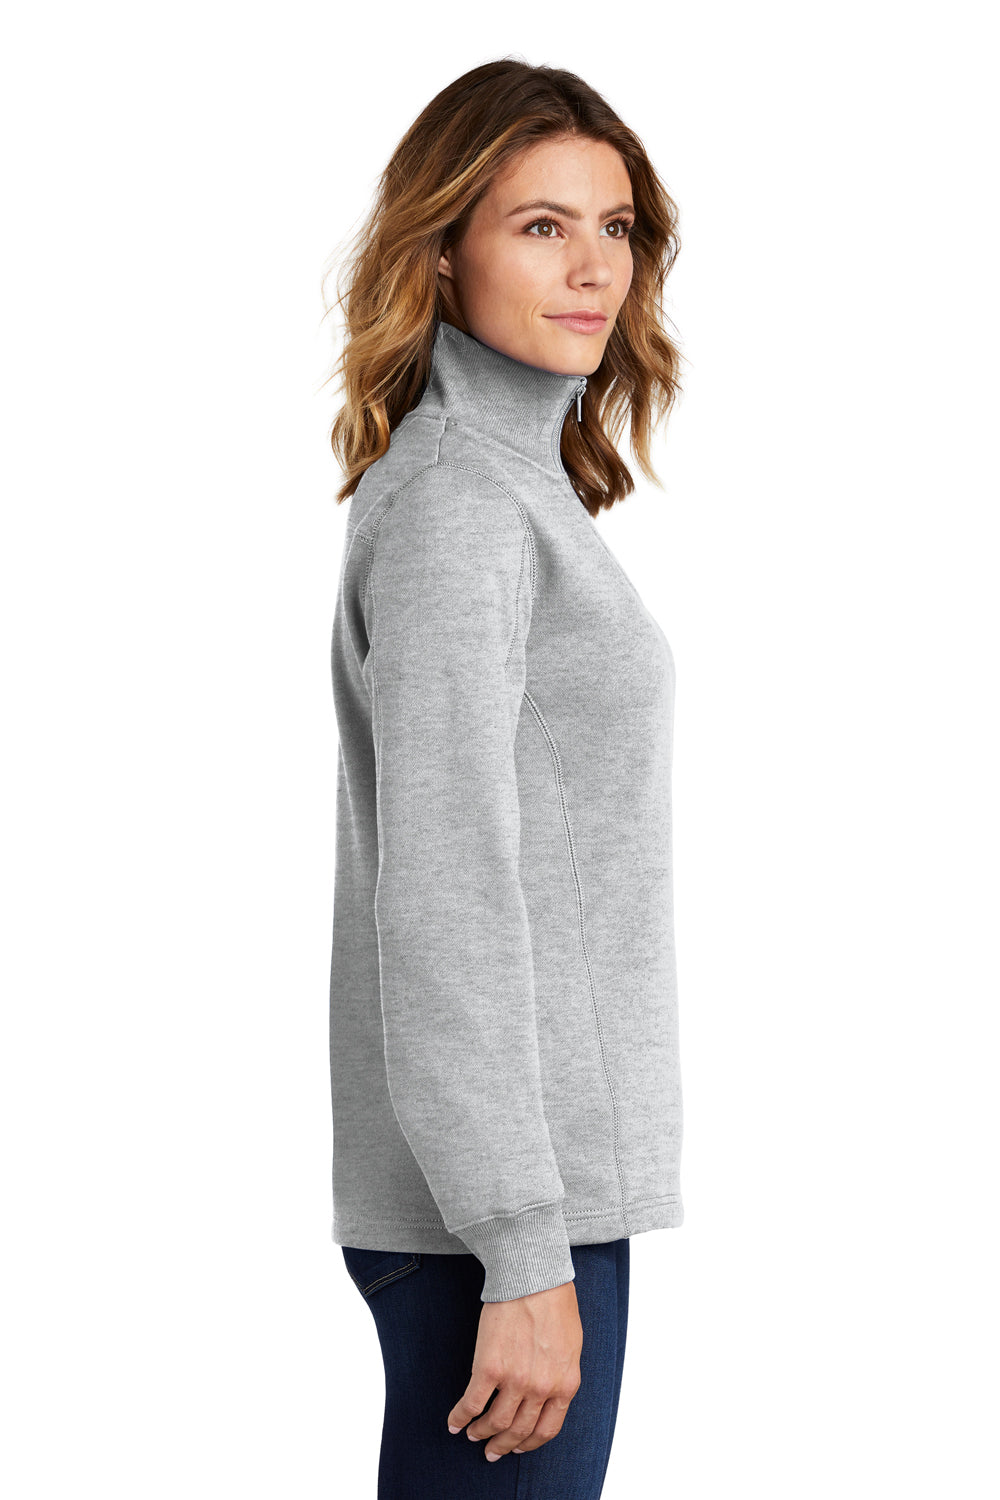 Sport-Tek LST253 Womens Fleece 1/4 Zip Sweatshirt Heather Grey Side